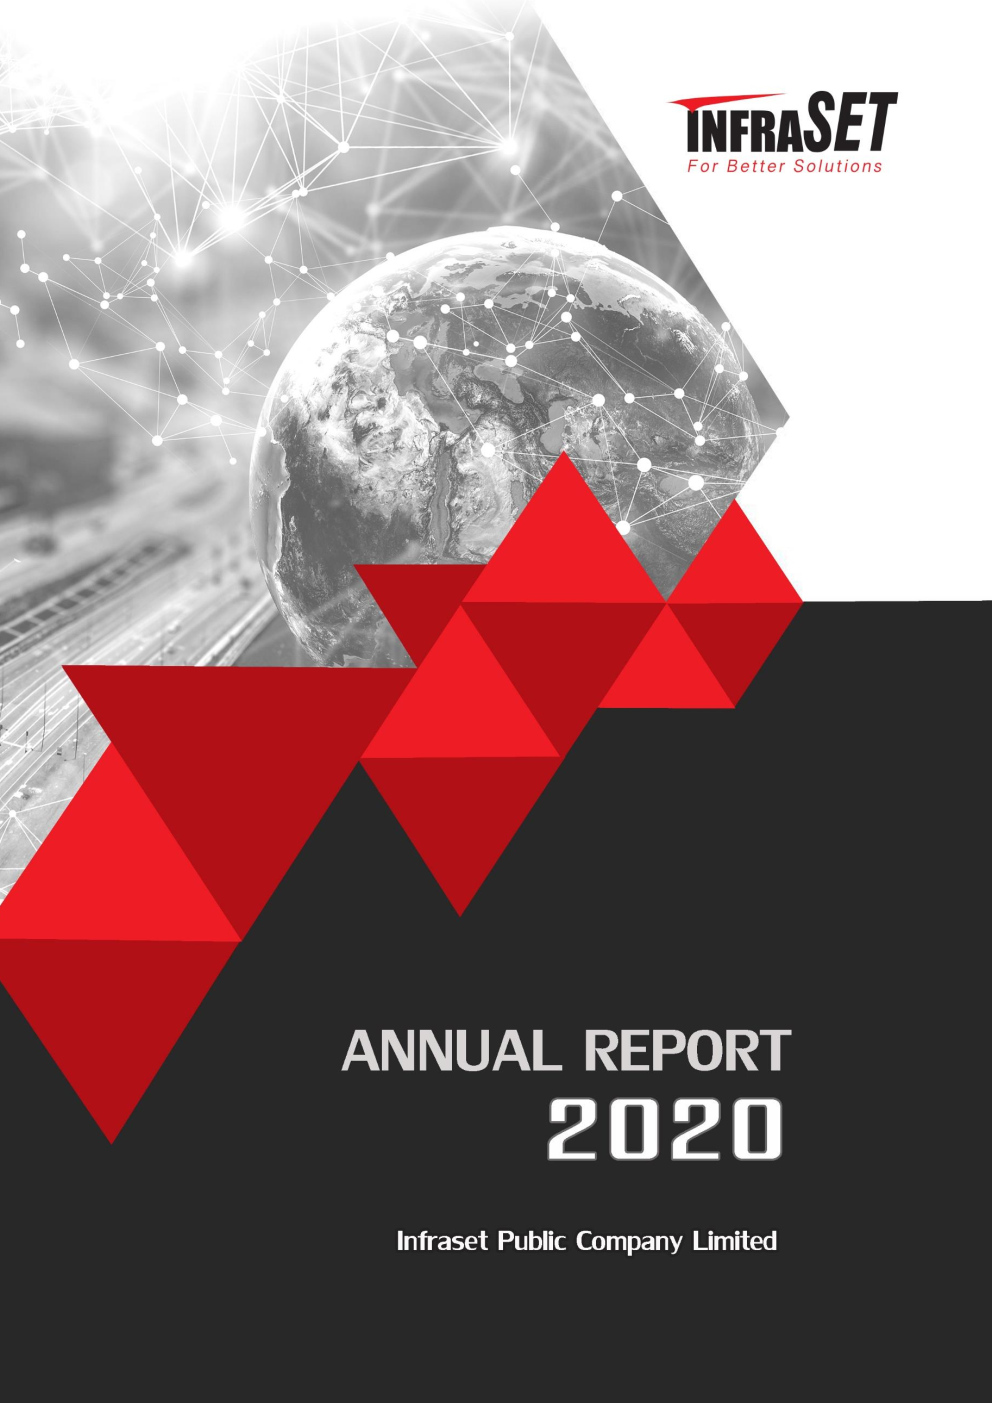 หน้าปก EN_INSET-2020-Annual Report